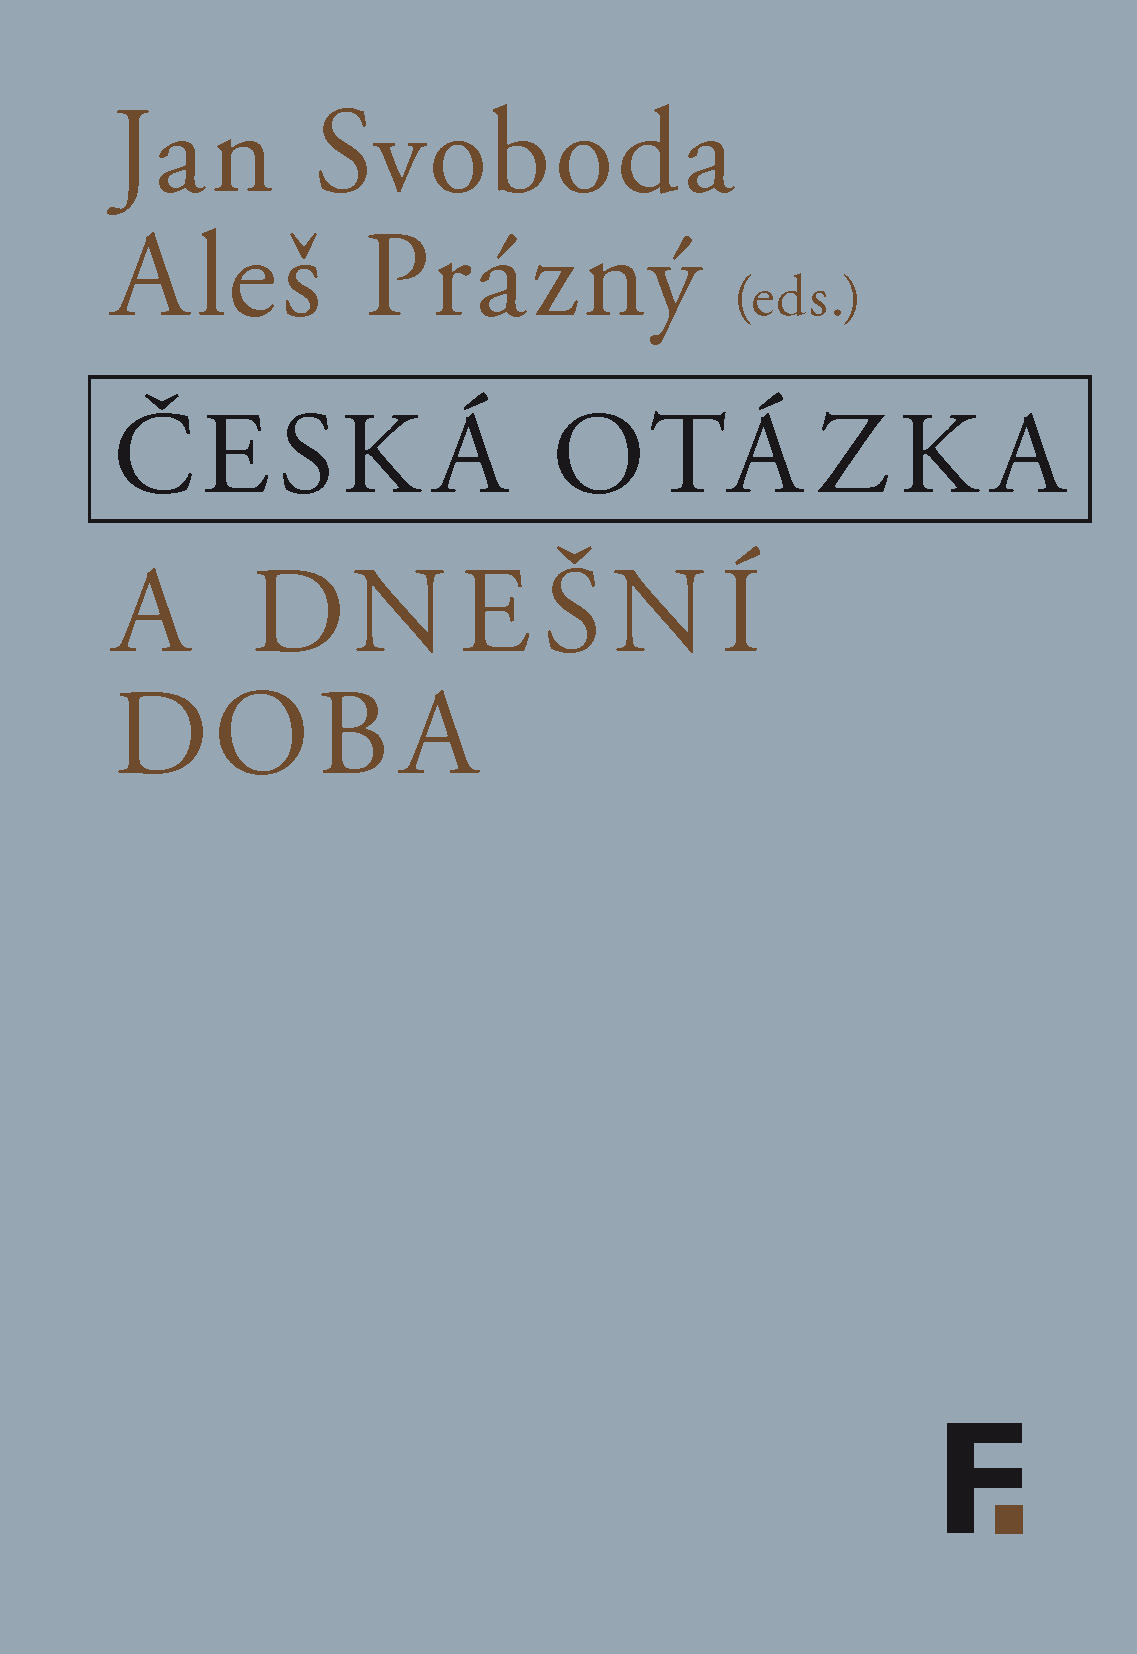 E-kniha Česká otázka a dnešní doba - Aleš Prázný (ed.), Jan Svoboda (ed.)